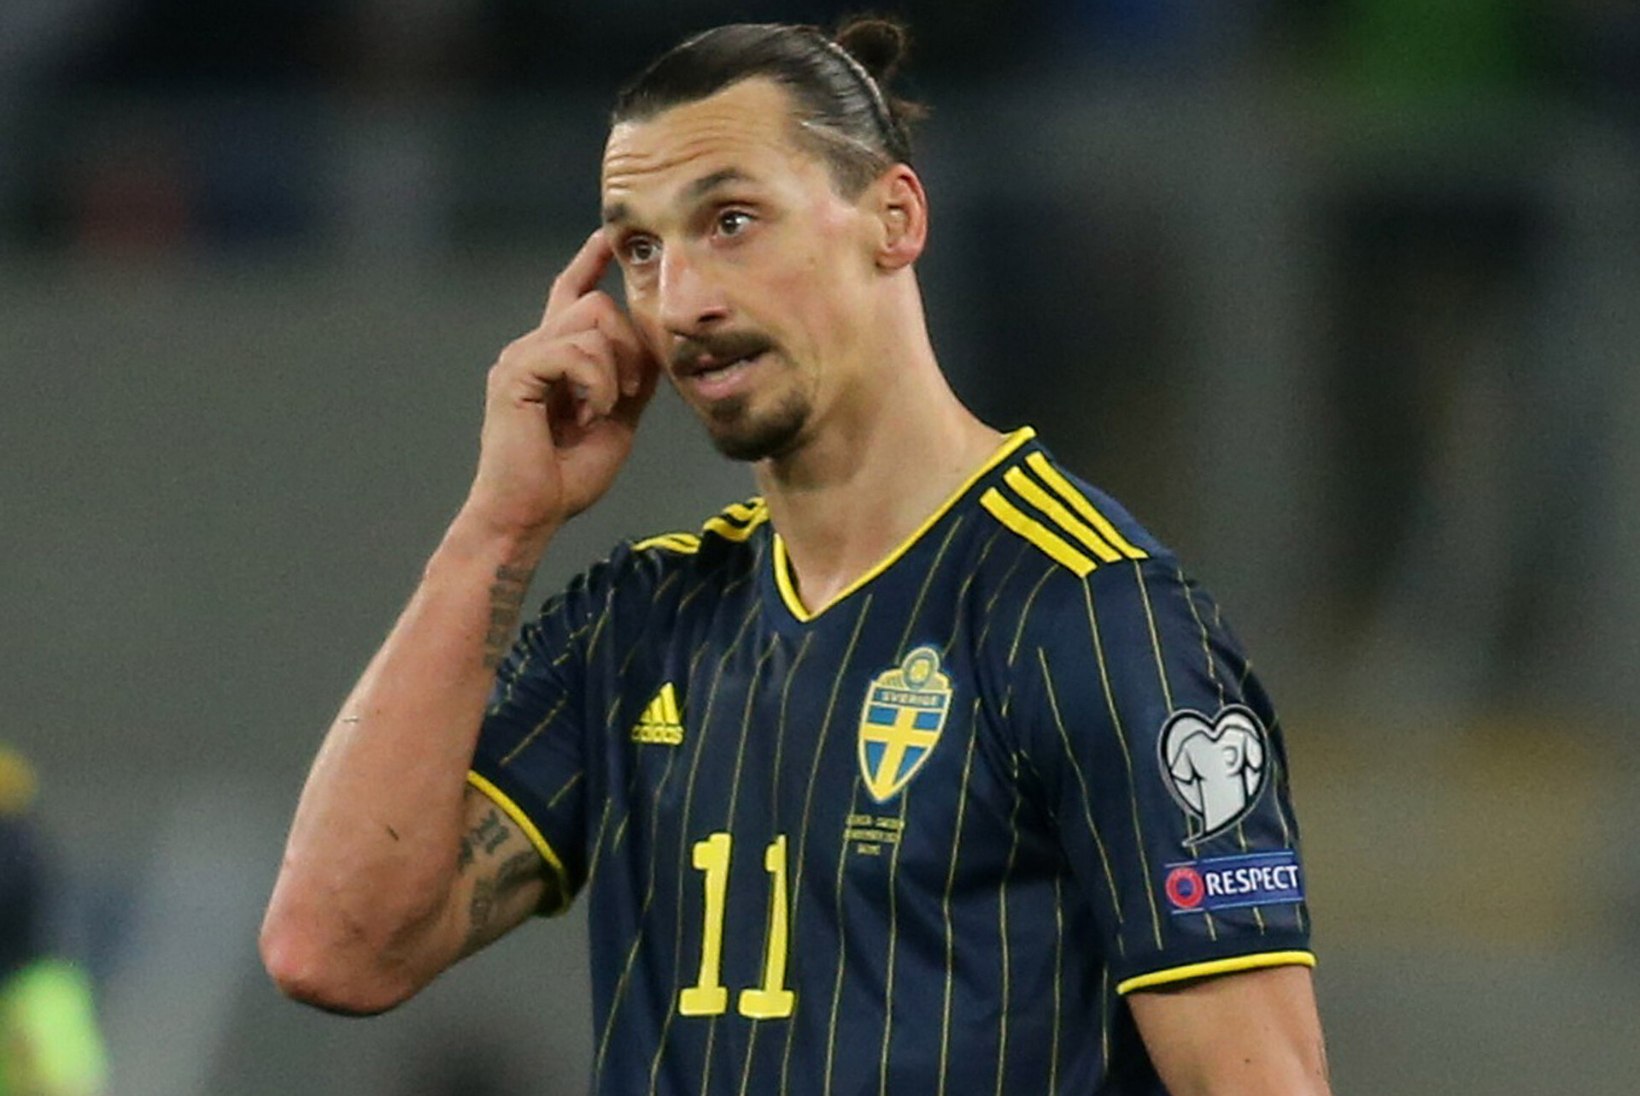 Zlatani appi võtnud Rootsi mängib oma imelist võimalust vägisi maha. Unitedi staar: ma keerasin asja per*e!